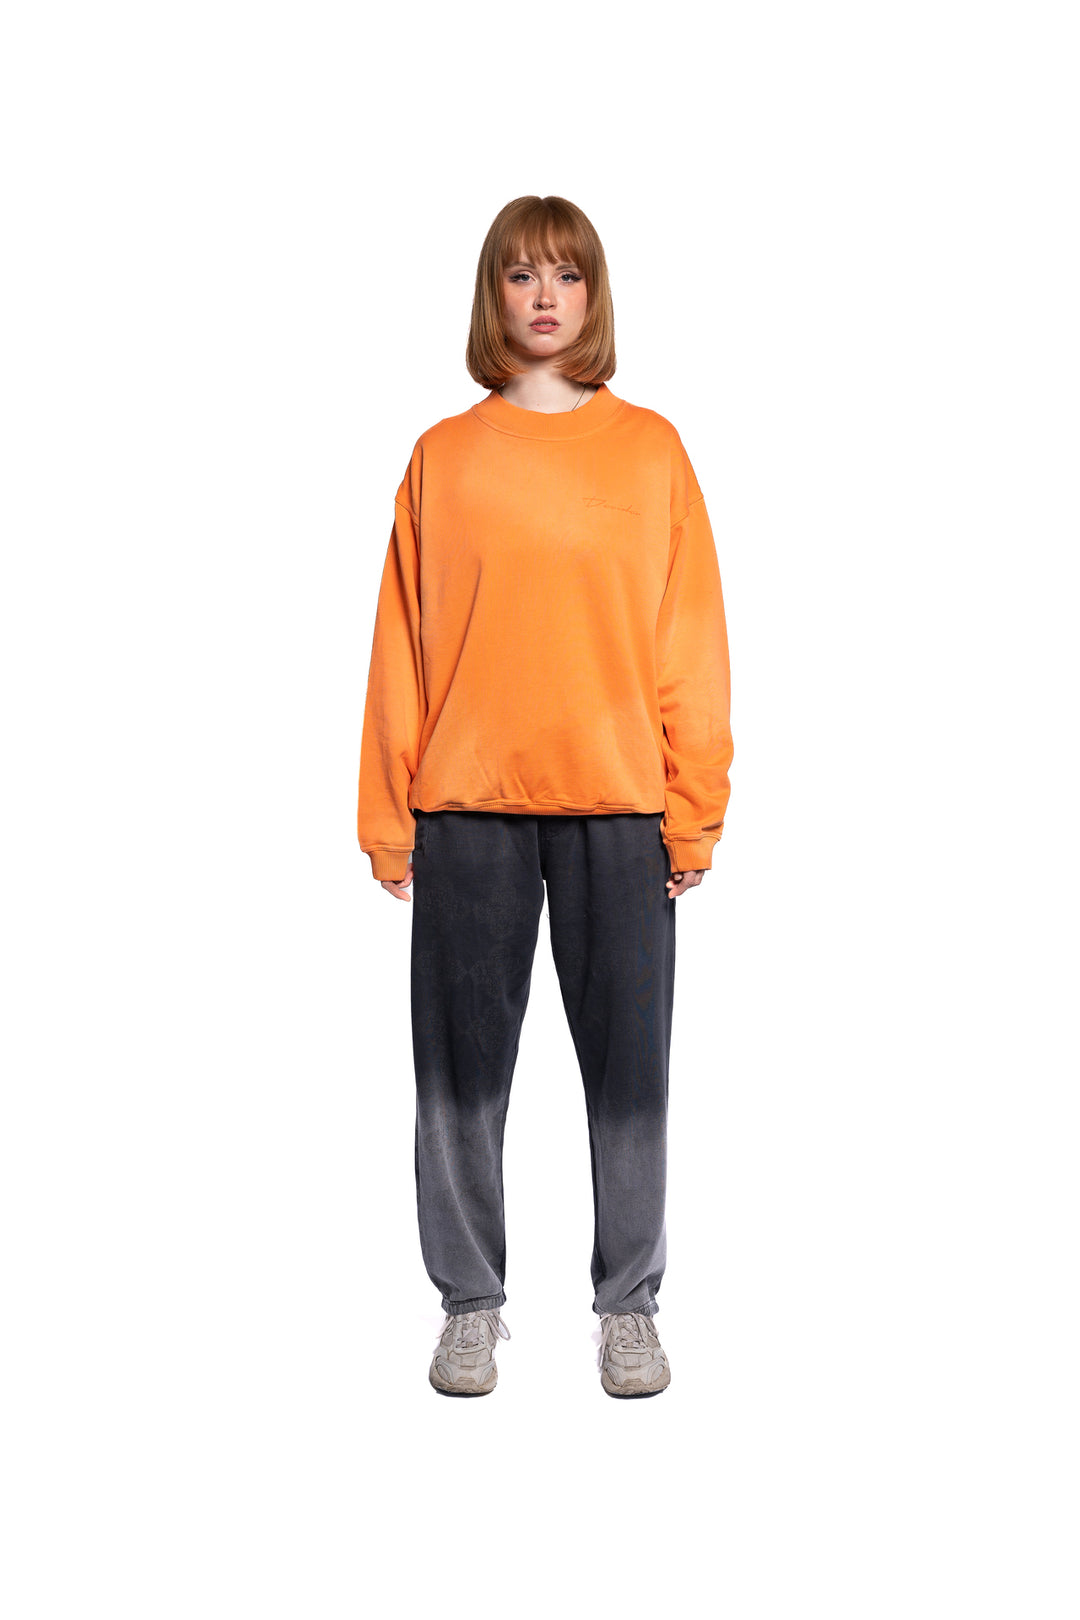 Oversized Decider Damen Sweatshirt in einem lebendigen Orange